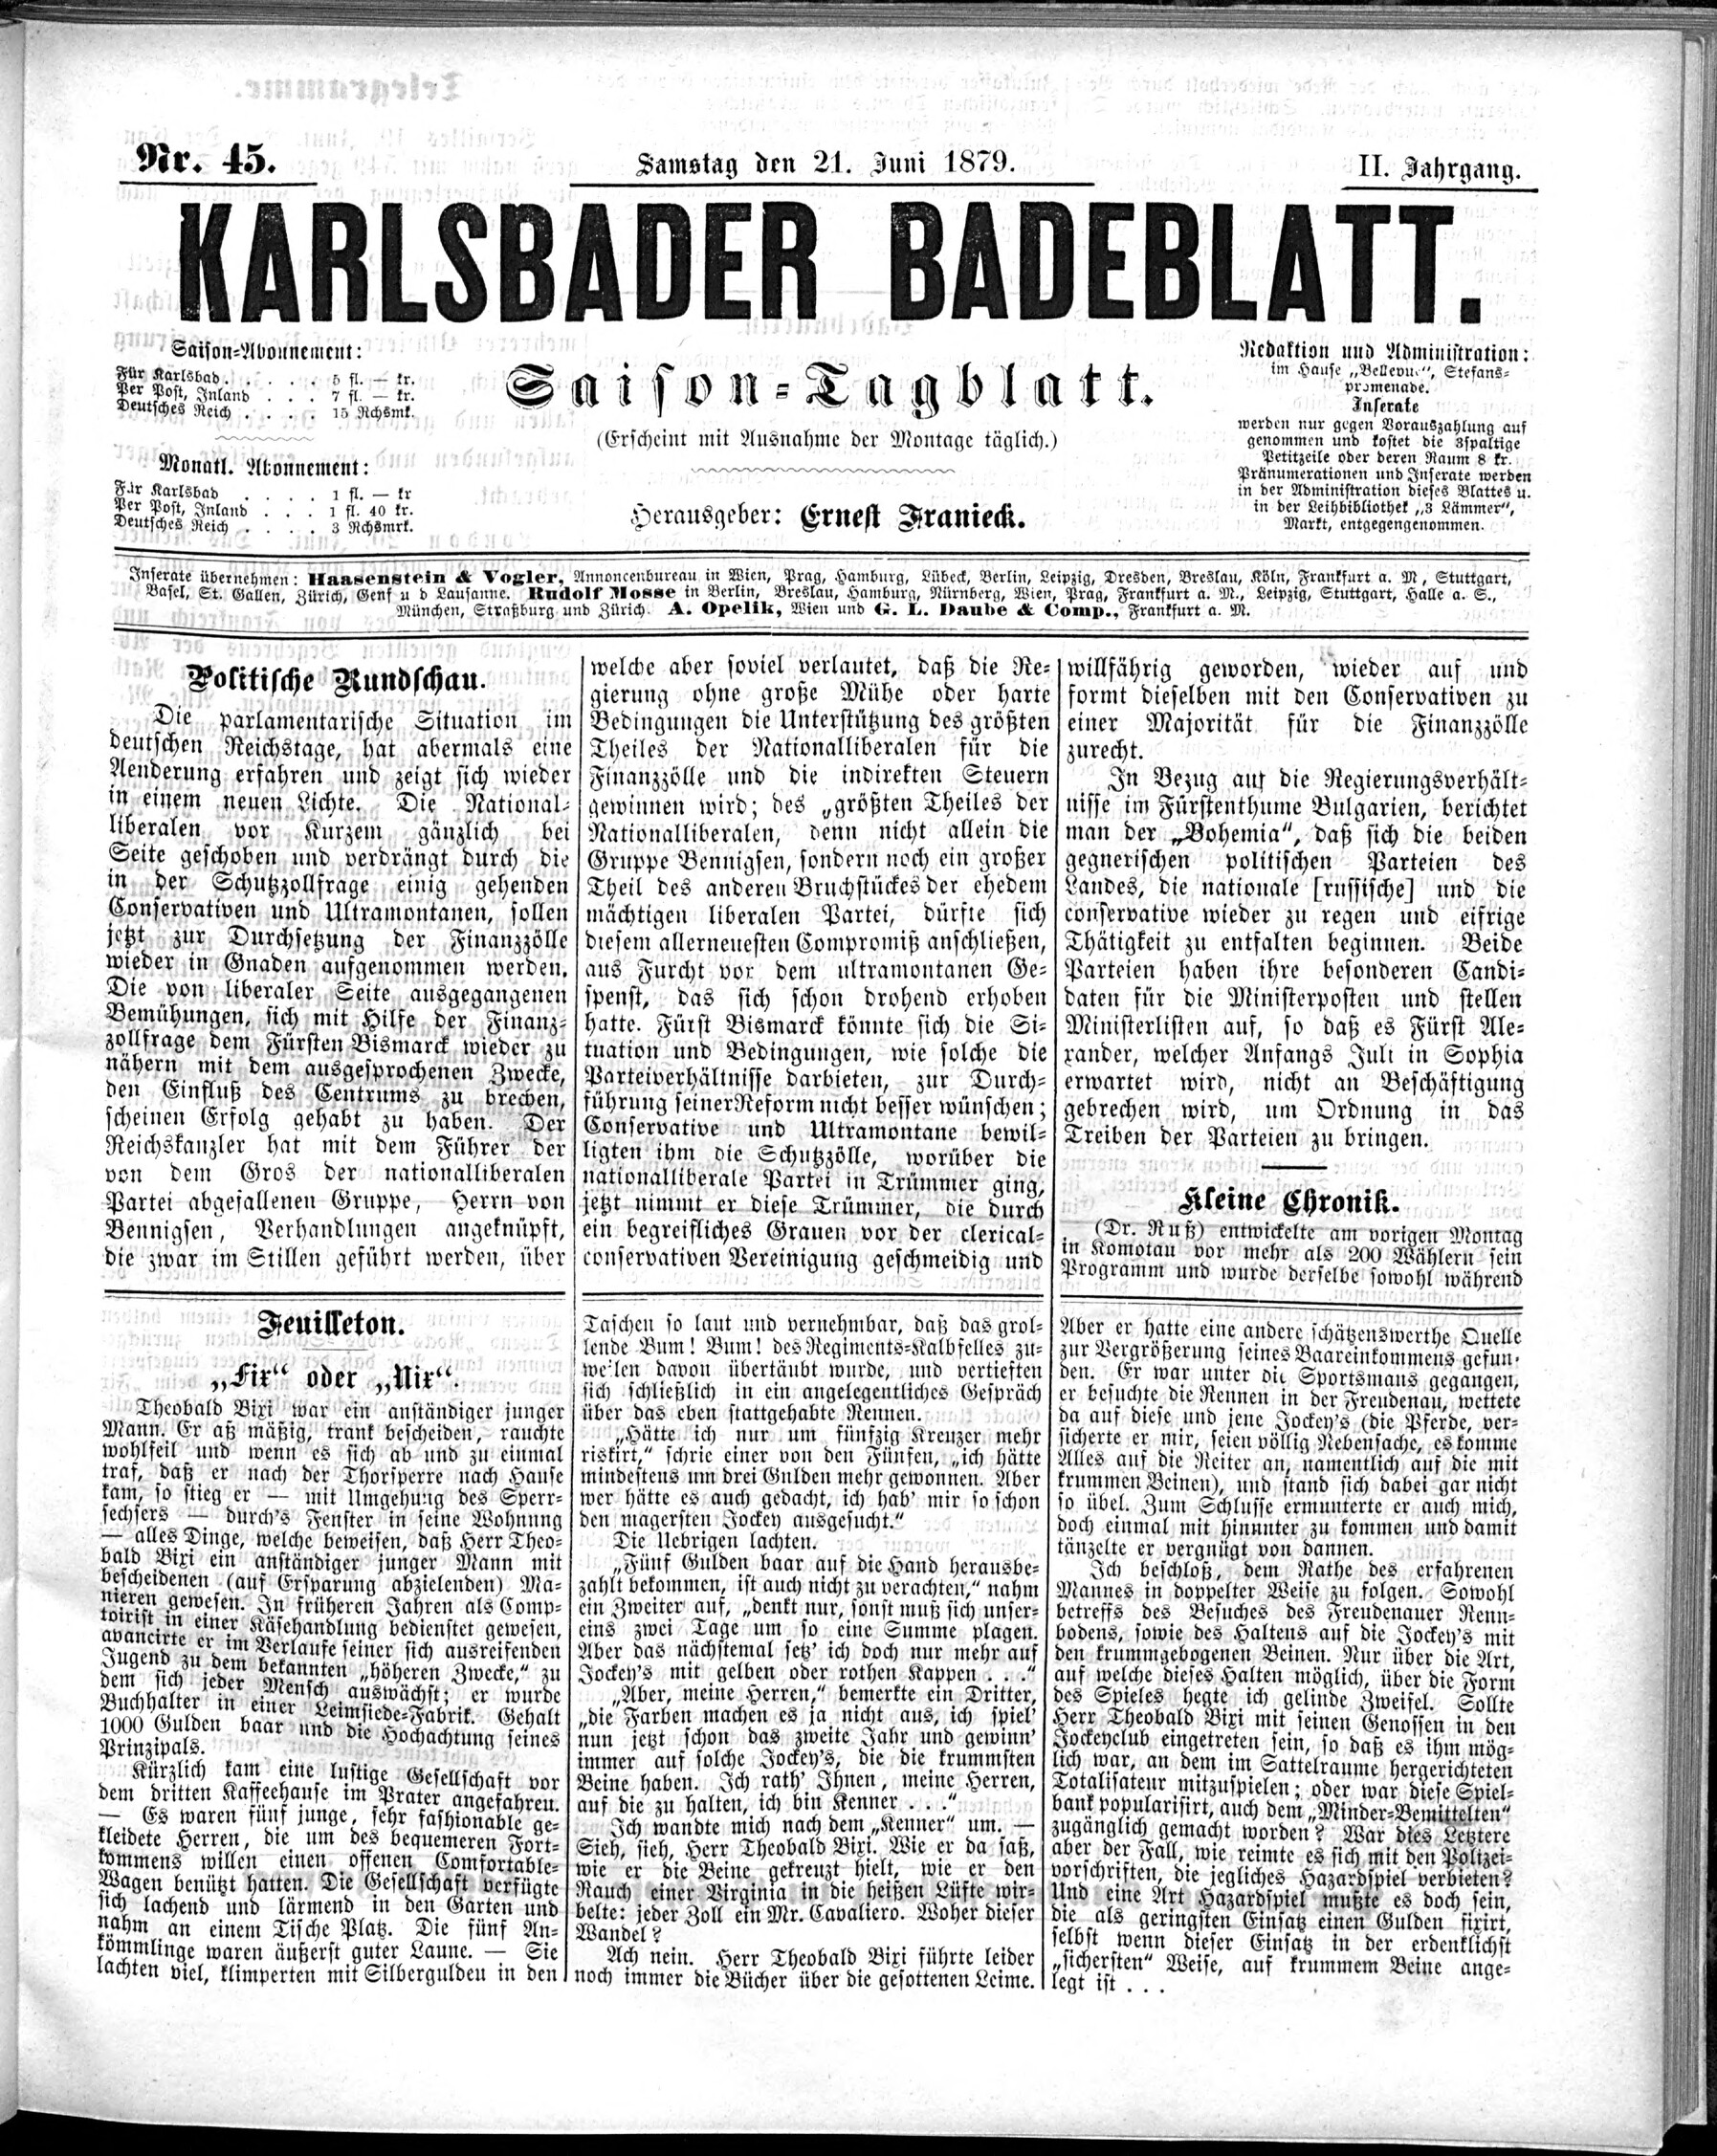 1. karlsbader-badeblatt-1879-06-21-n45_0945